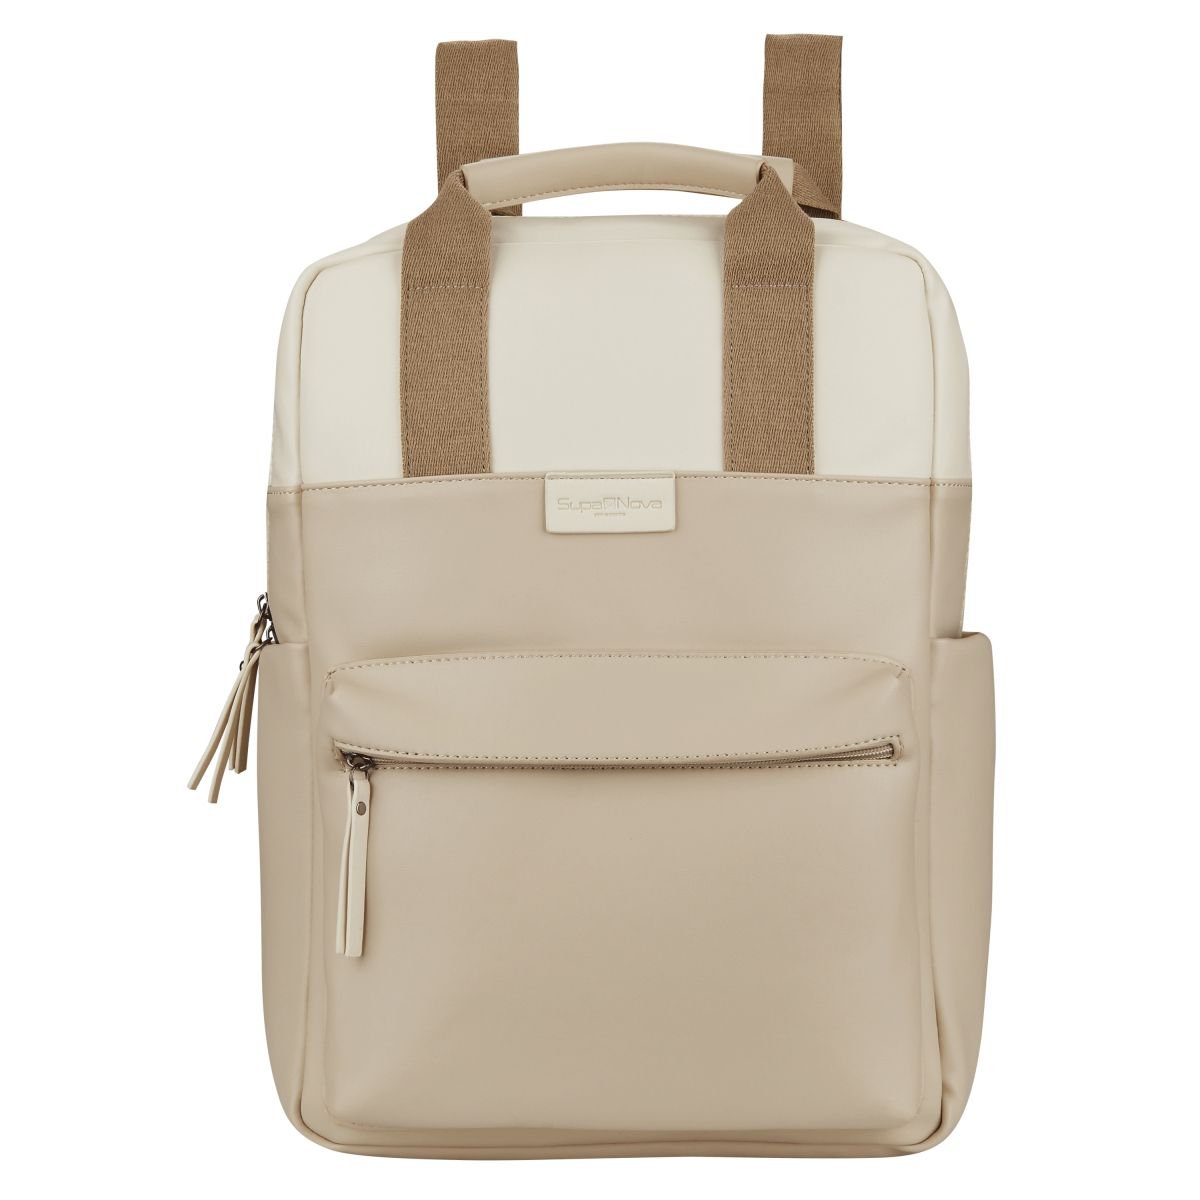 SupaNova Ladies Laptop Bag - Sasha Series in Tan/Cream | Buy Online in ...